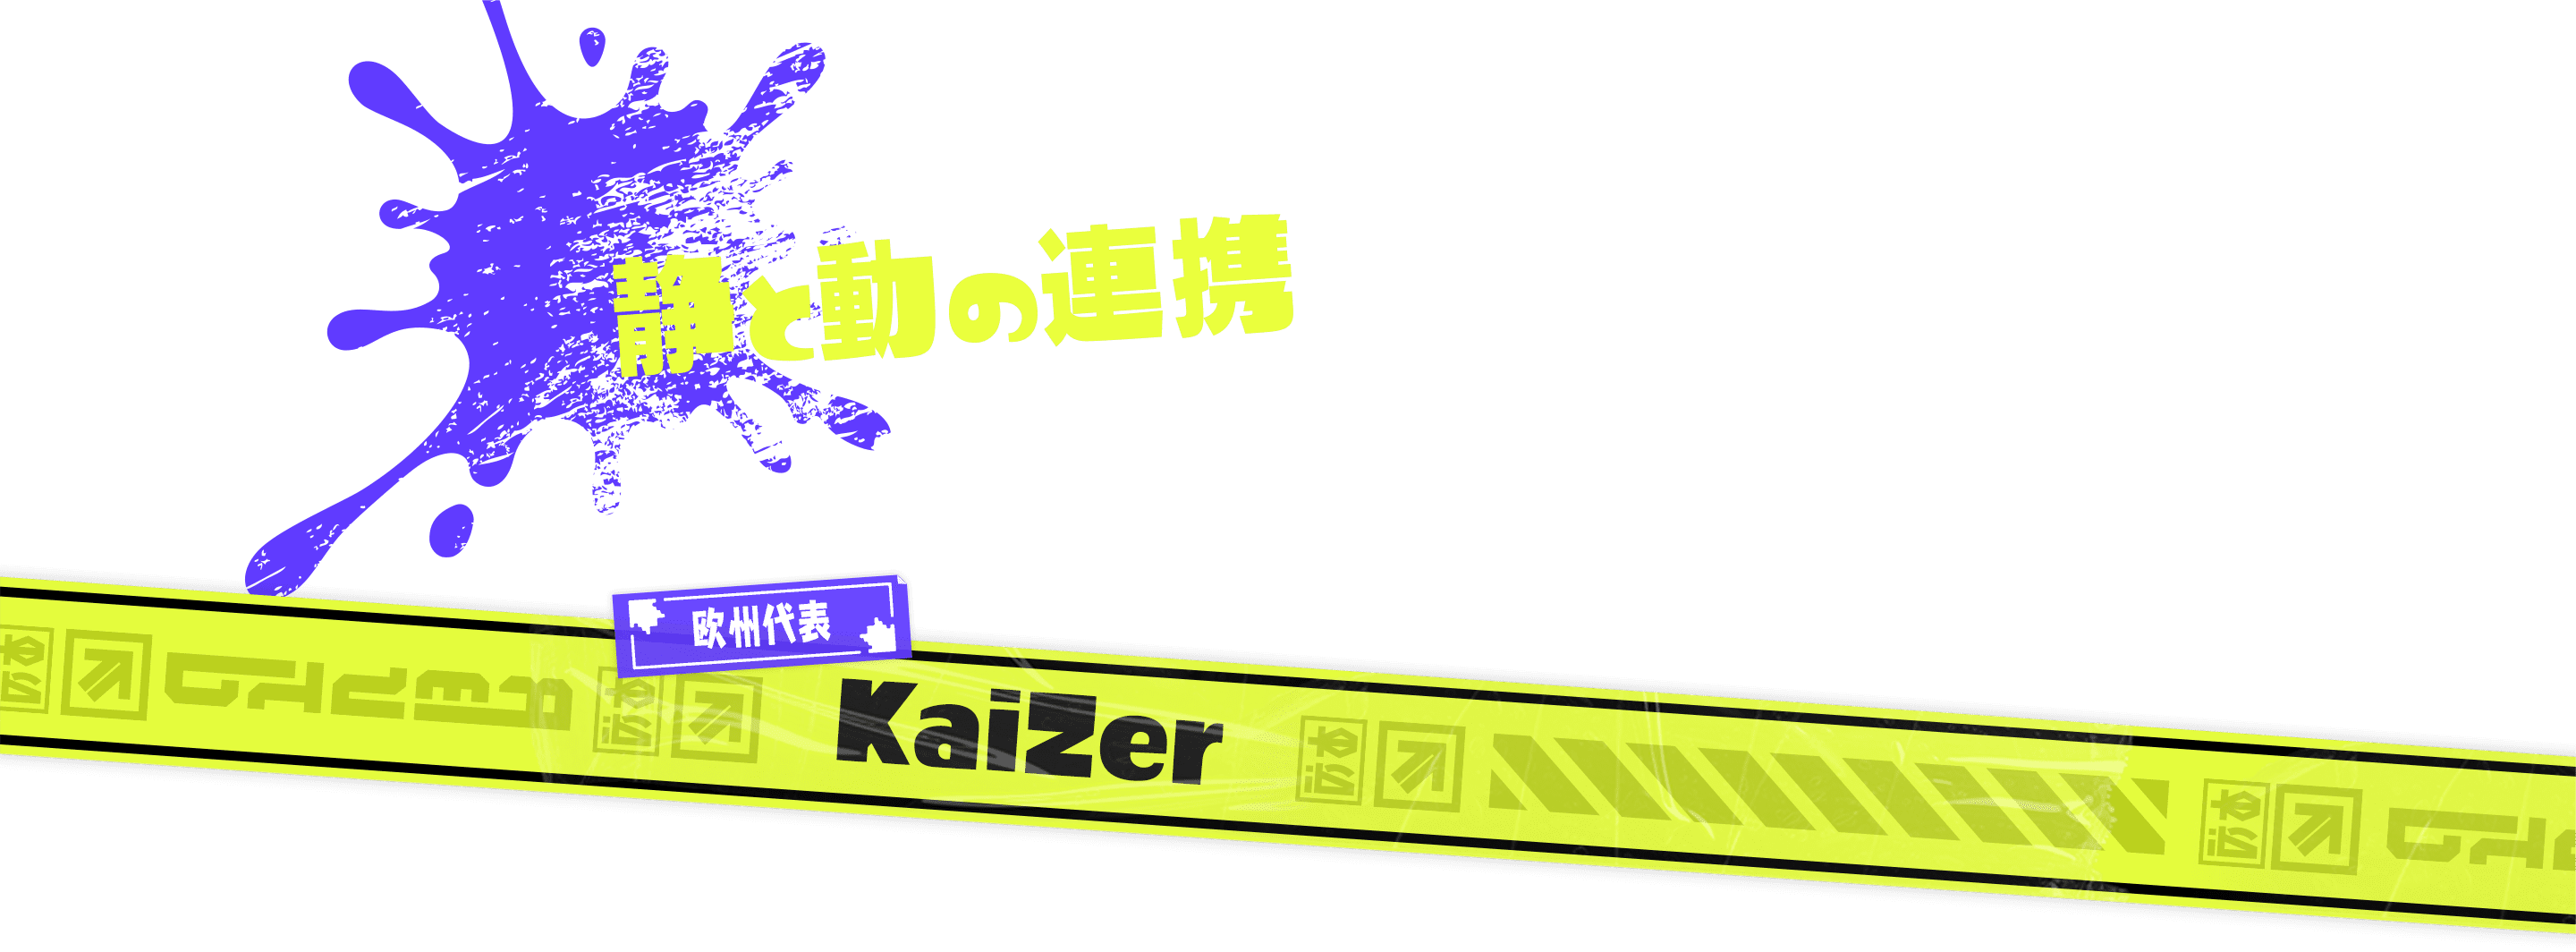 静と動の連携 欧州代表 KaiZer